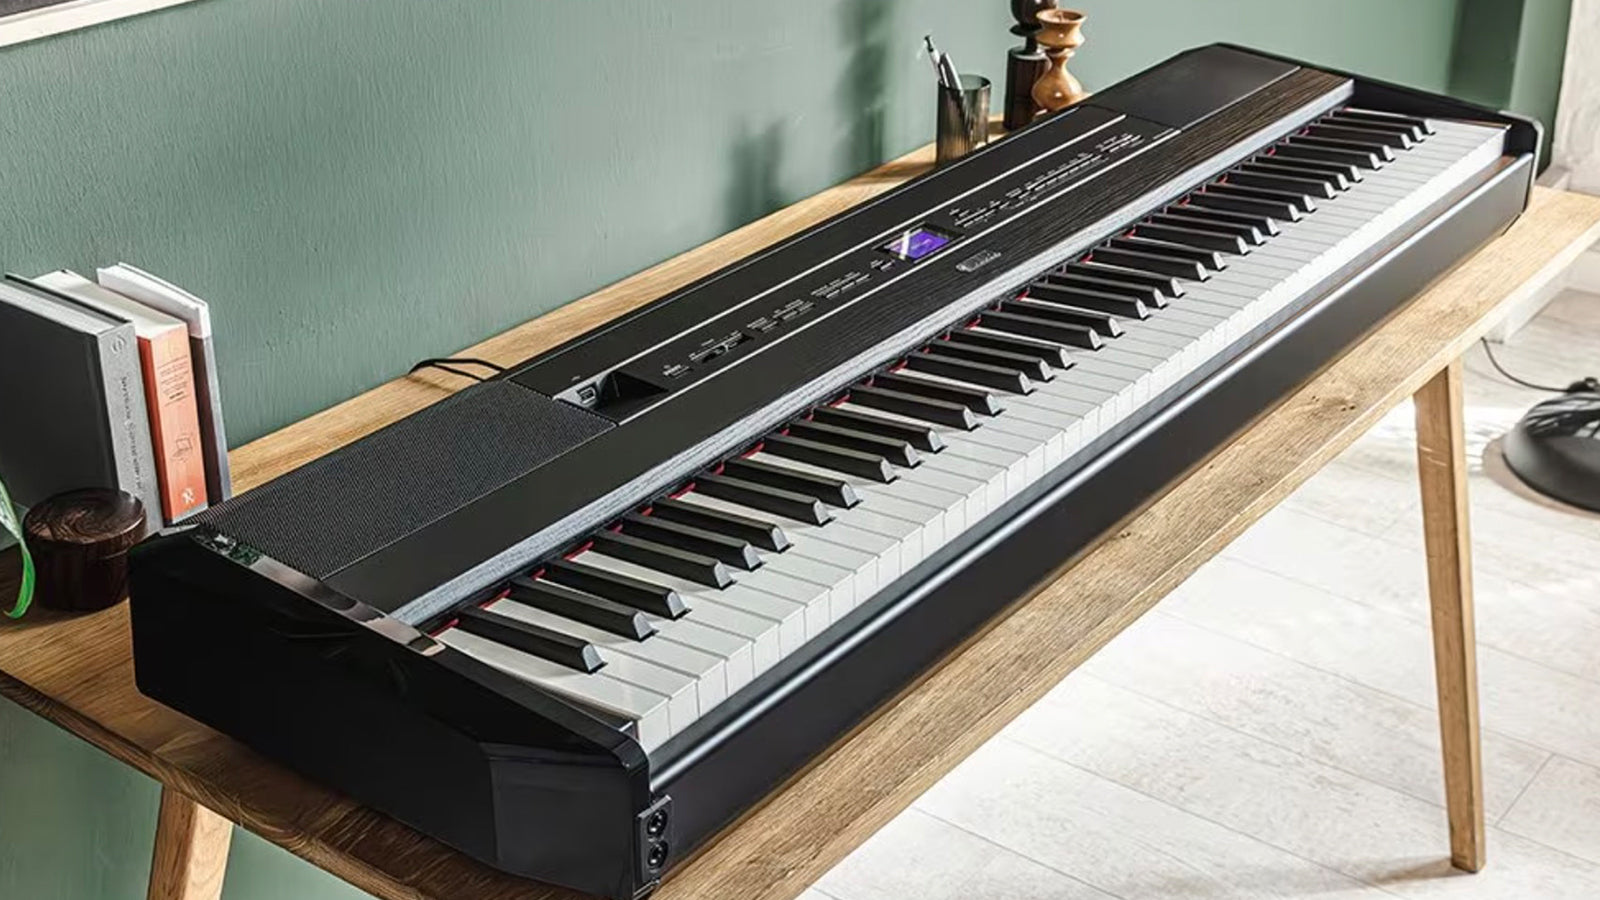 A Yamaha P-525 digital piano on a desk